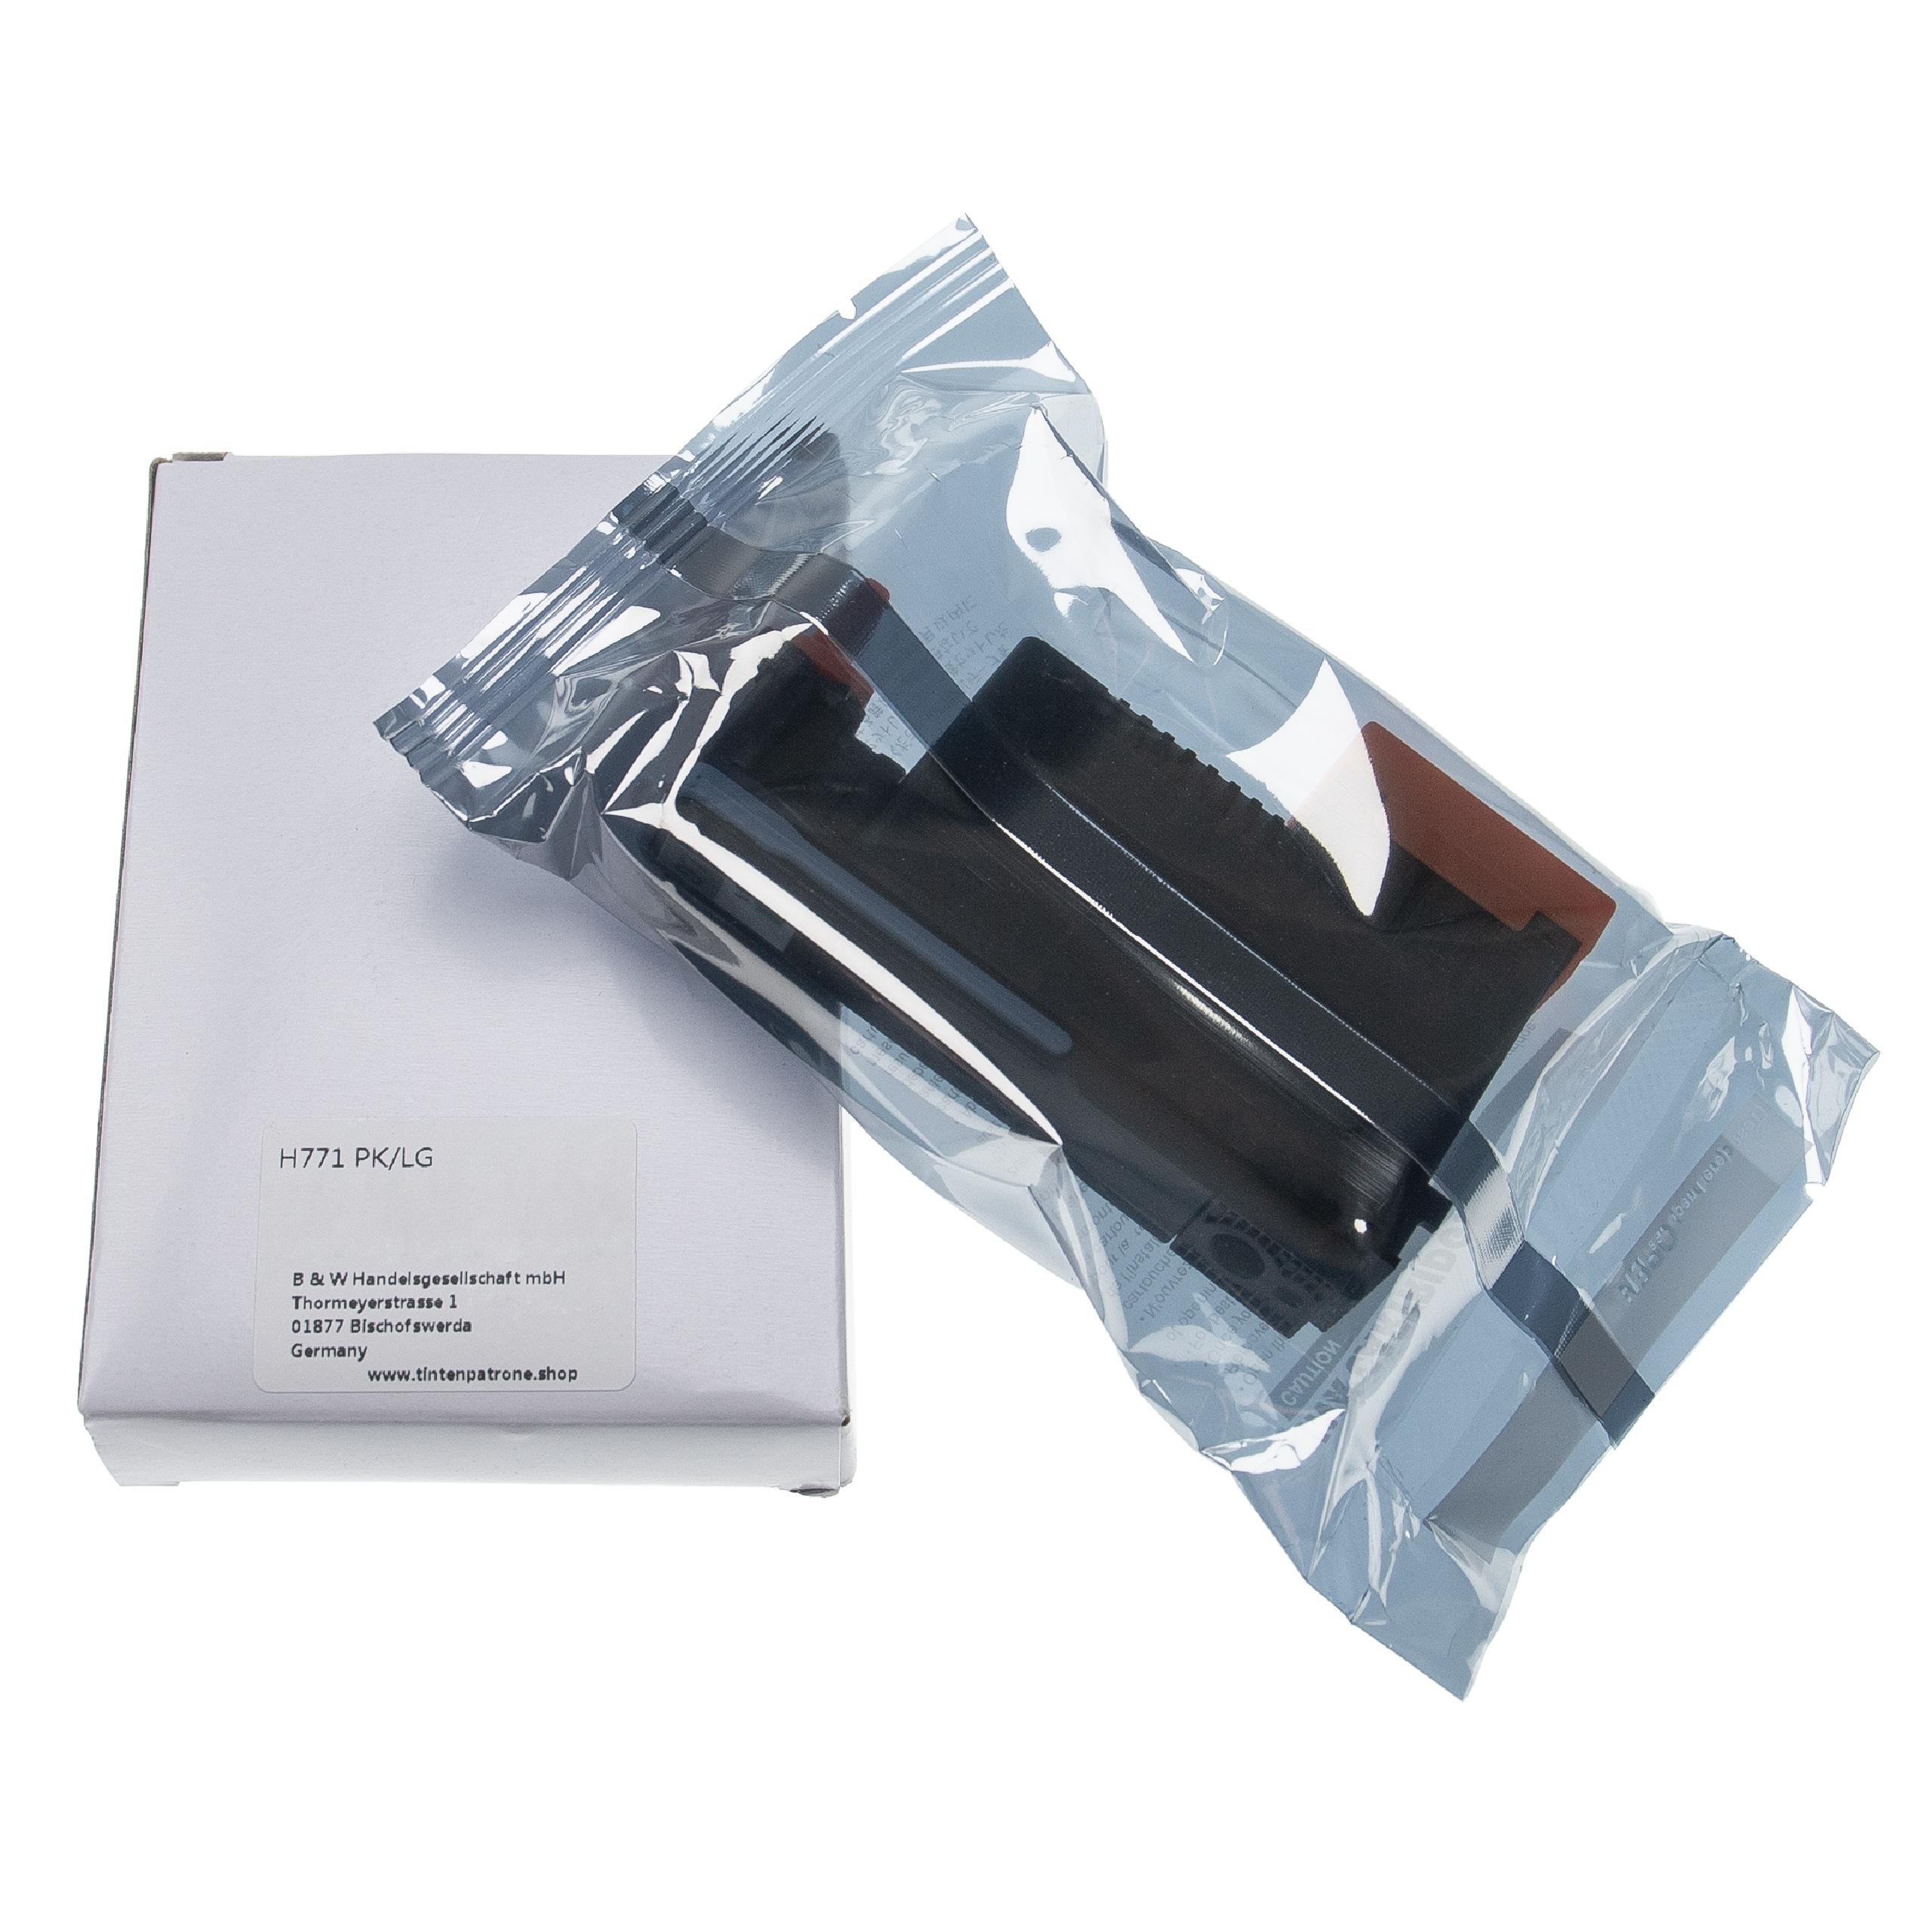 Druckkopf für HP DesignJet HP CE020A Drucker - 775 ml, photo black/light gray, 6,2 cm breit, Refurbished